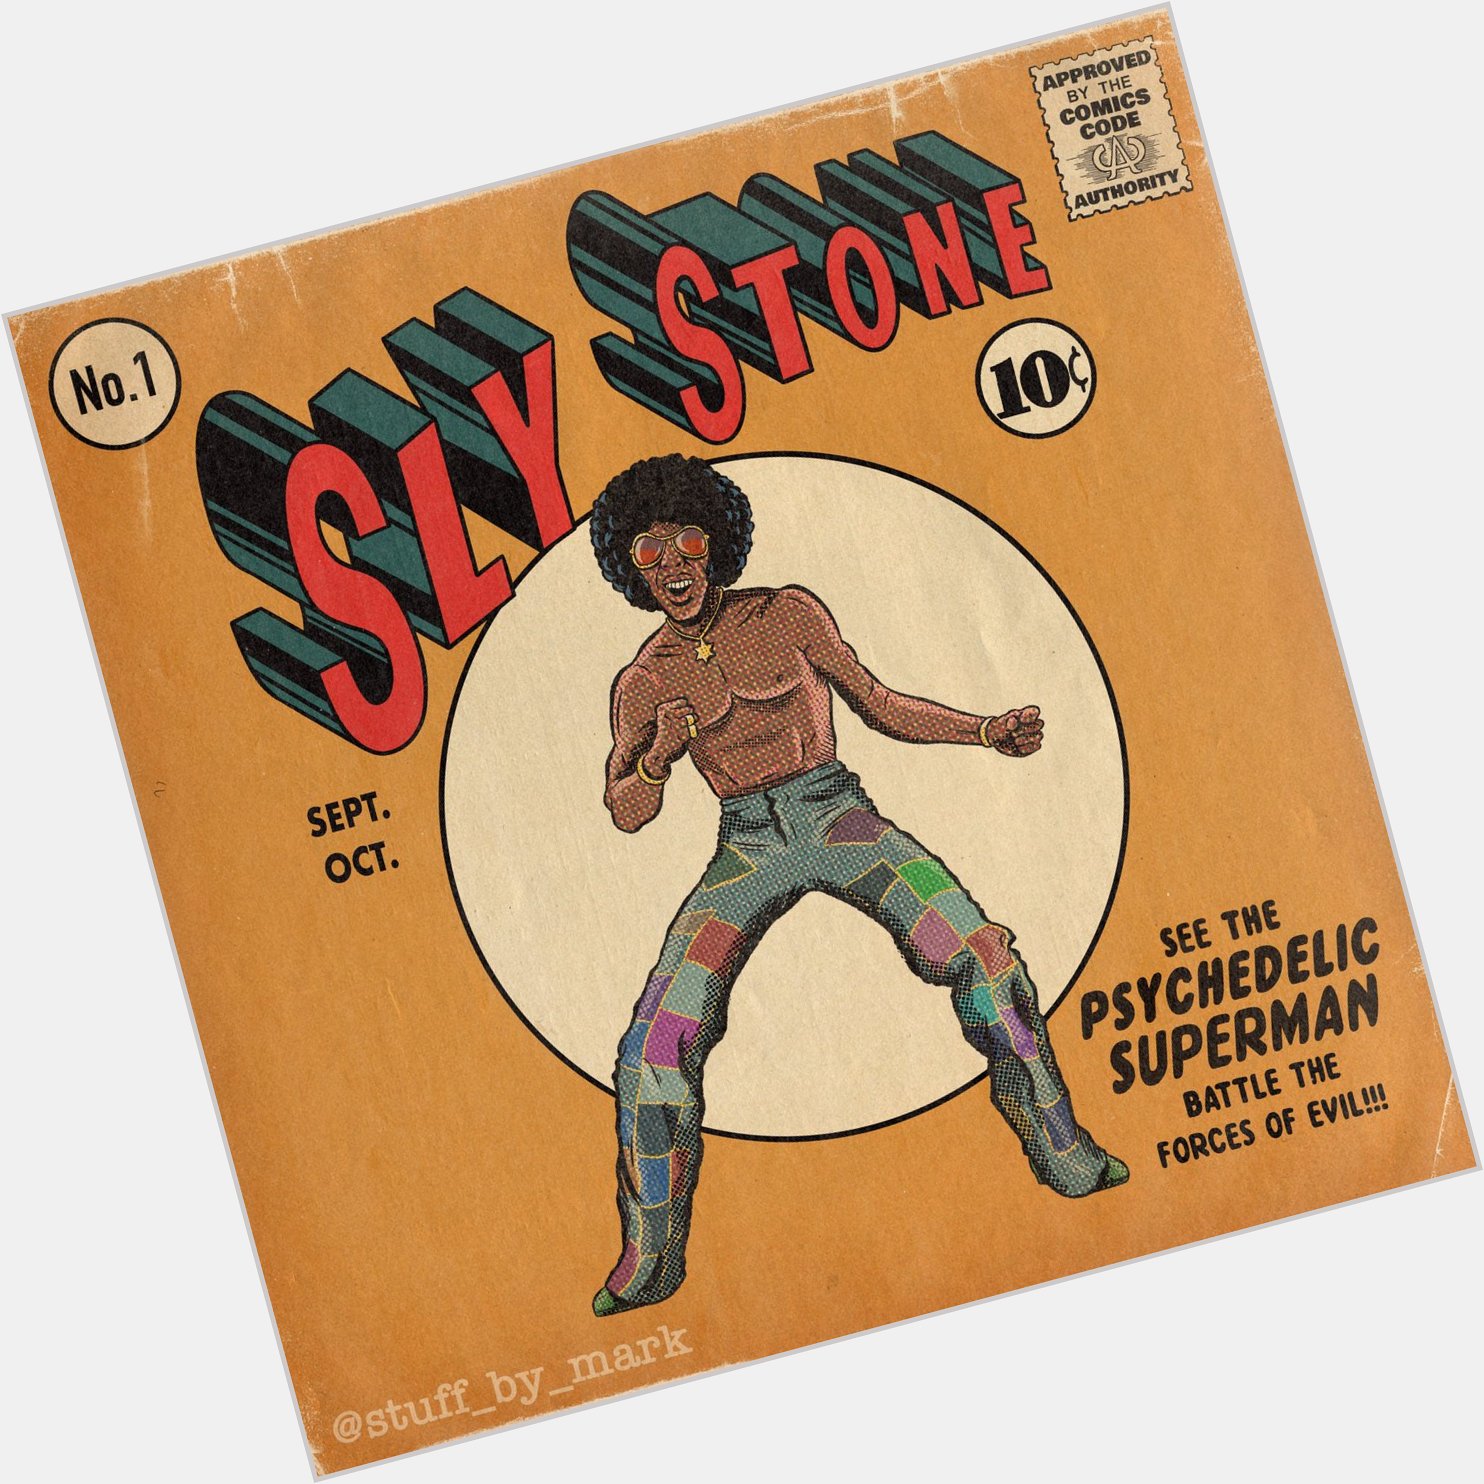 Happy Birthday to the mighty Sly Stone 